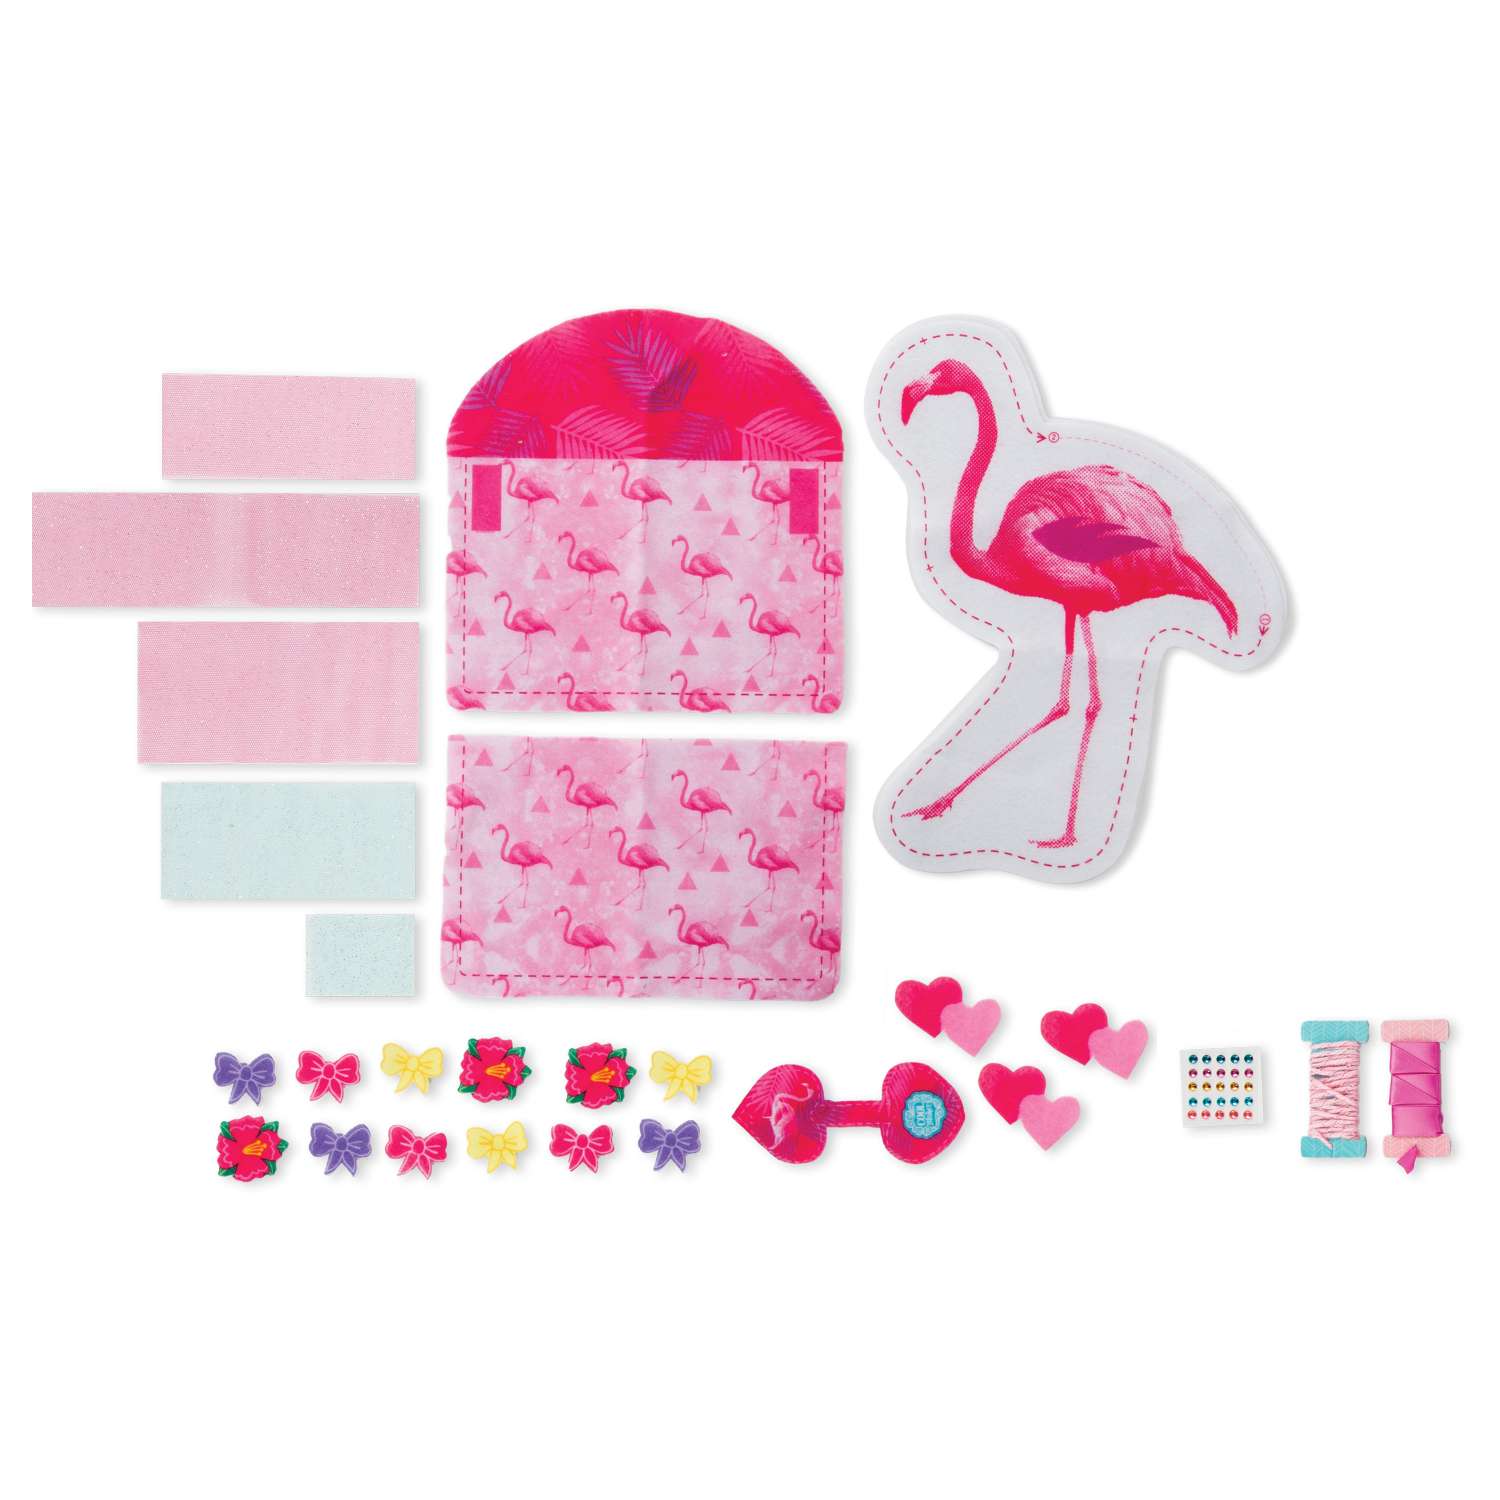 Набор для творчества Cool Maker Трафареты Flamingo швейный 6020688/20097864 - фото 2